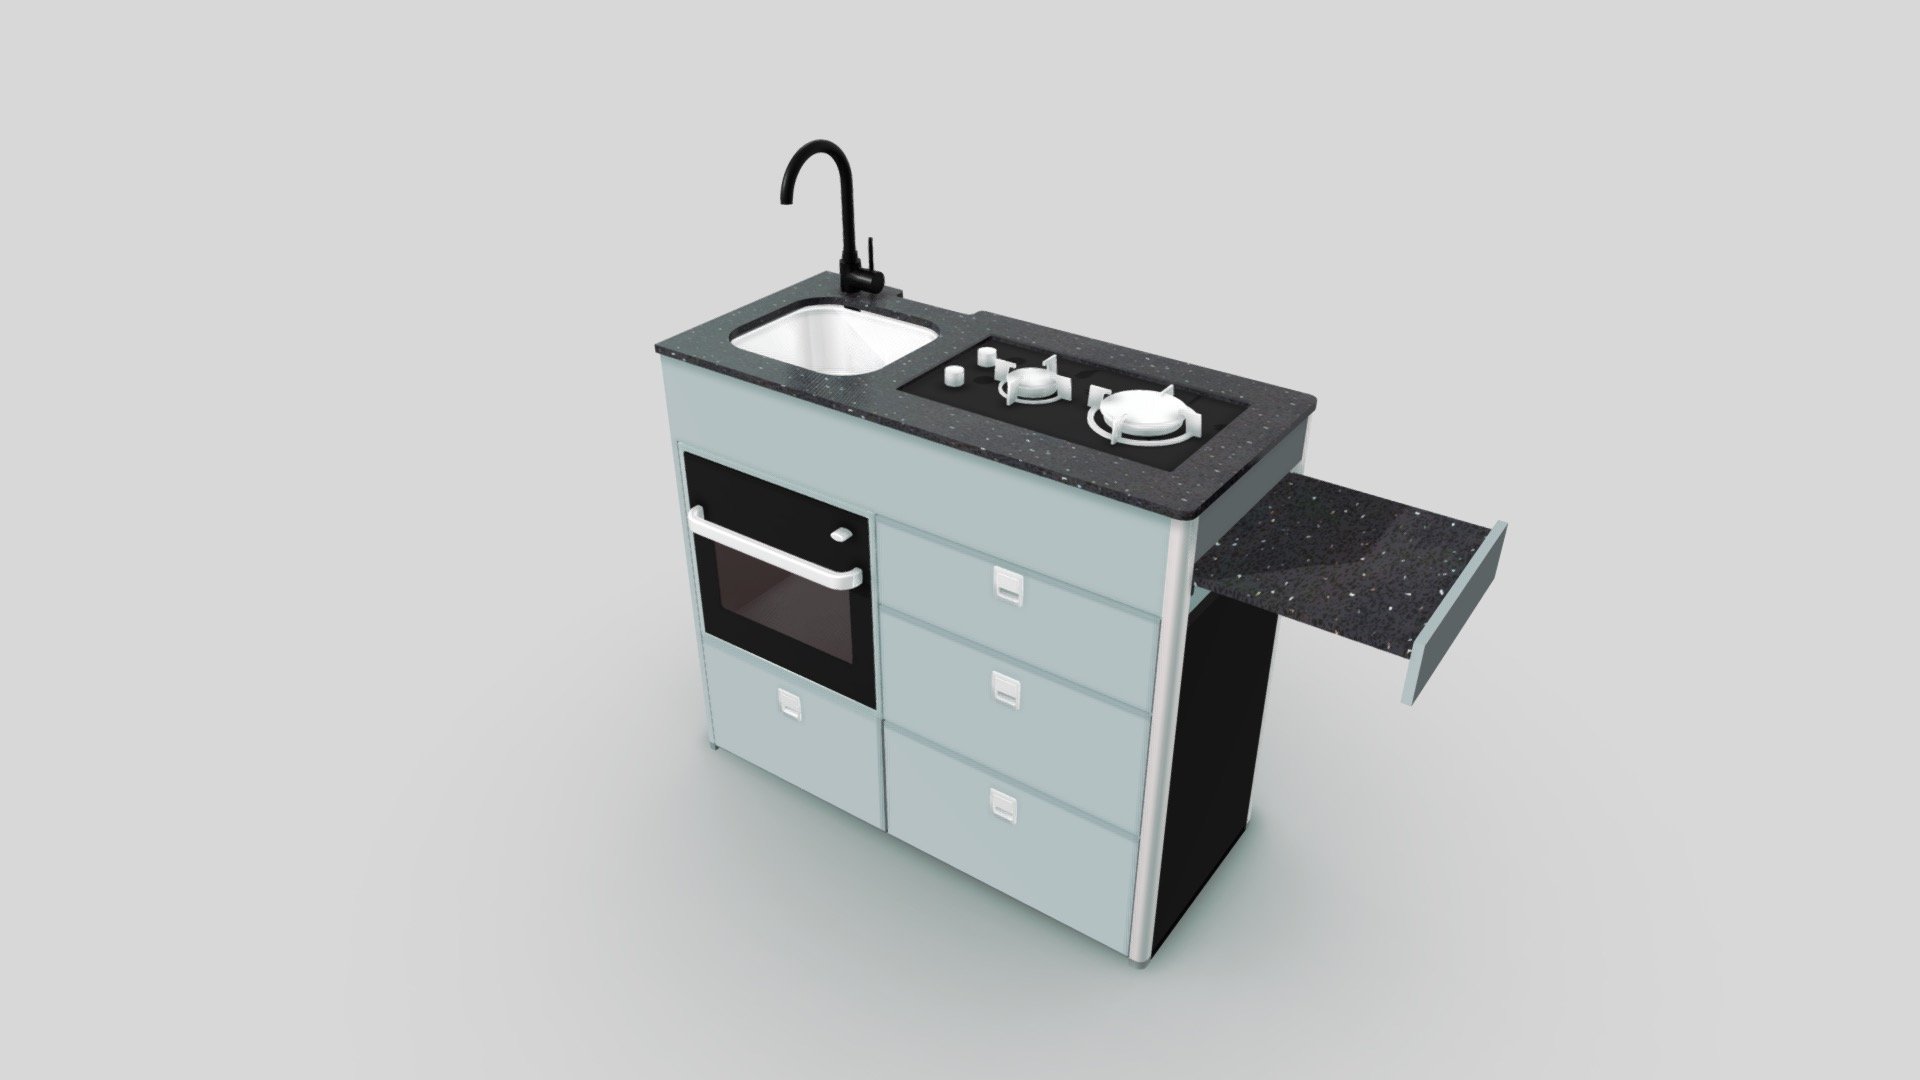 3D model of the evo V5.1 kitchen pod designed by Evo Motion Design to fit your campervan 3d model